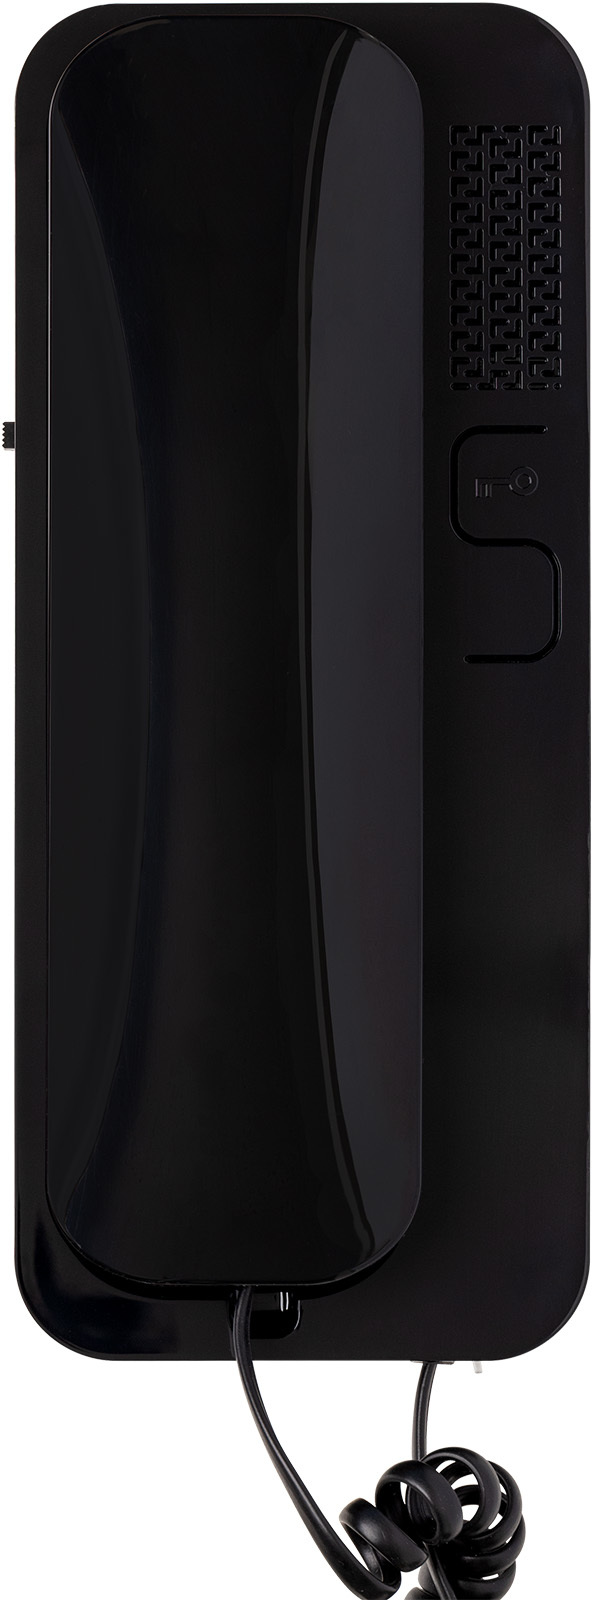 Цифровая трубка домофона CYFRAL Unifon SMART D (черный глянец). Для подъездных домофонов: LASKOMEX KEYMAN PROEL.